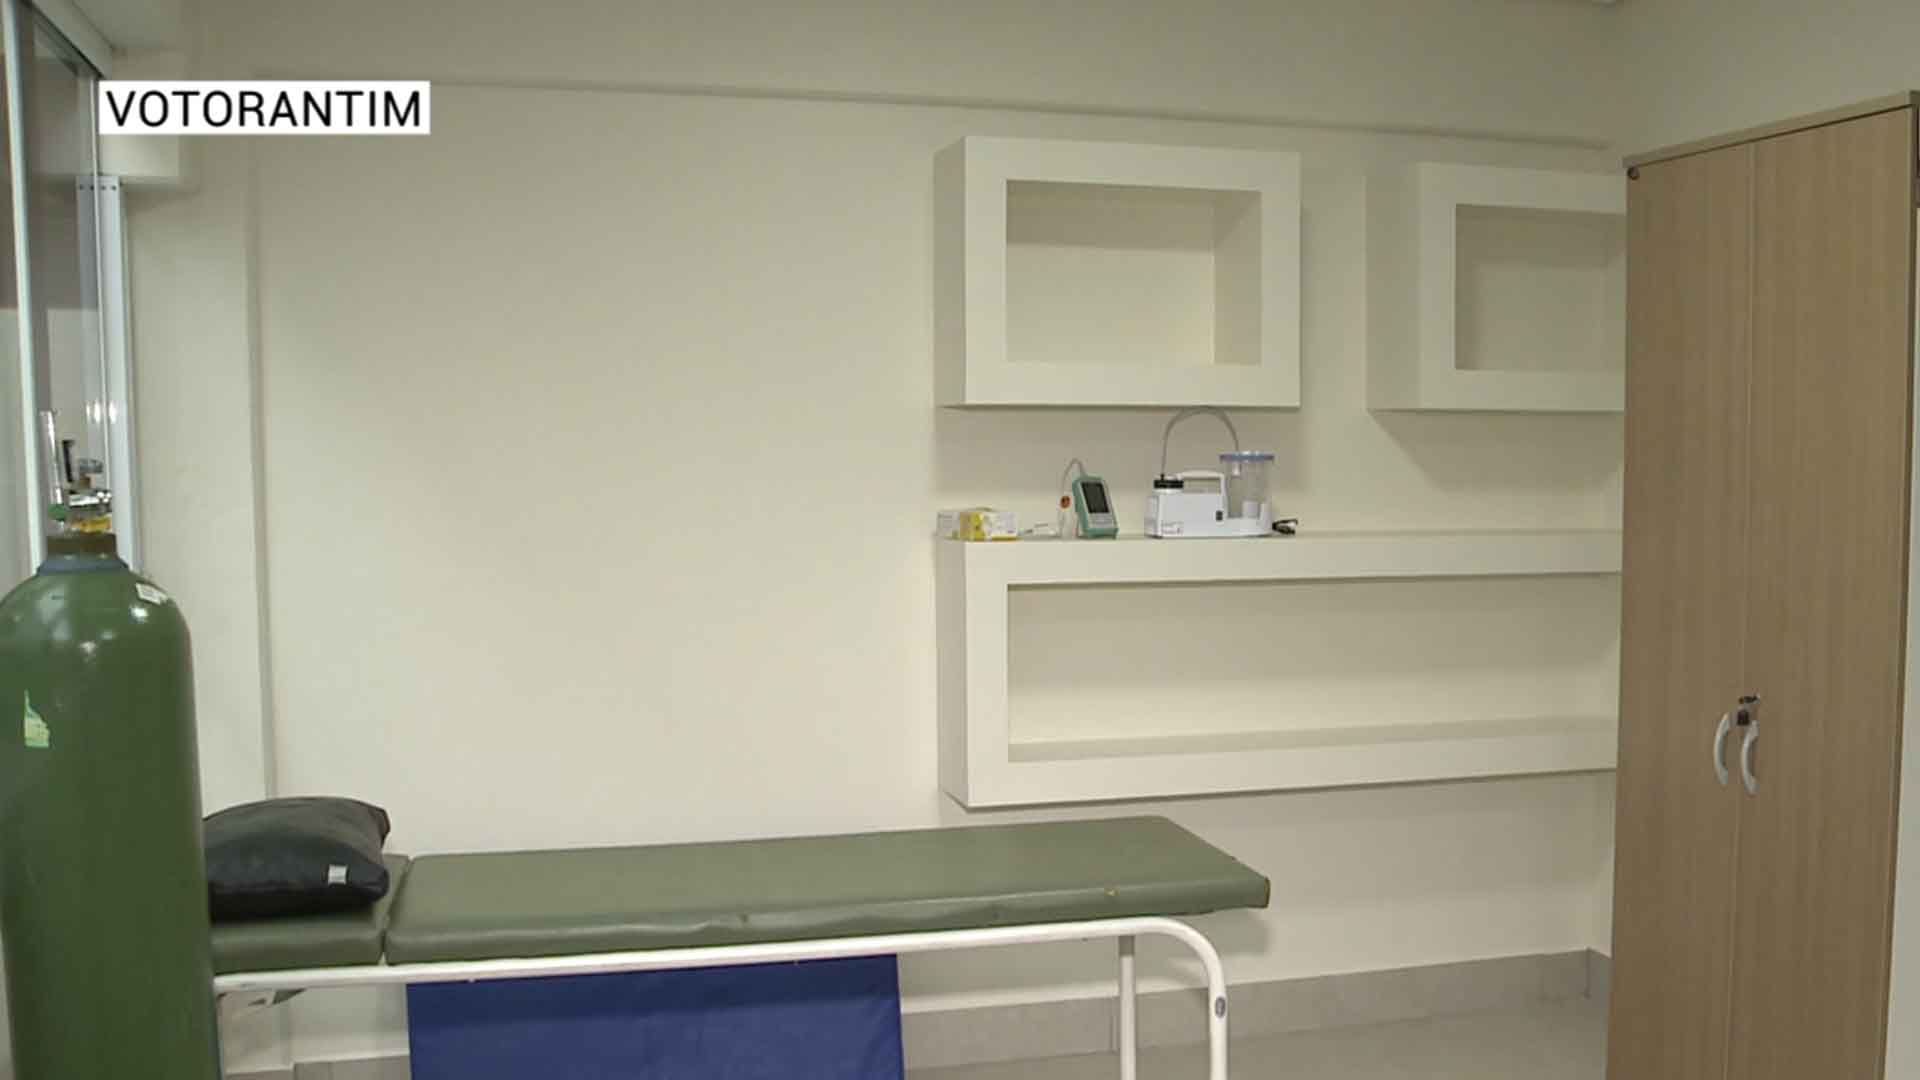 Votorantim tem espaço exclusivo para atender pacientes com sequelas da covid-19